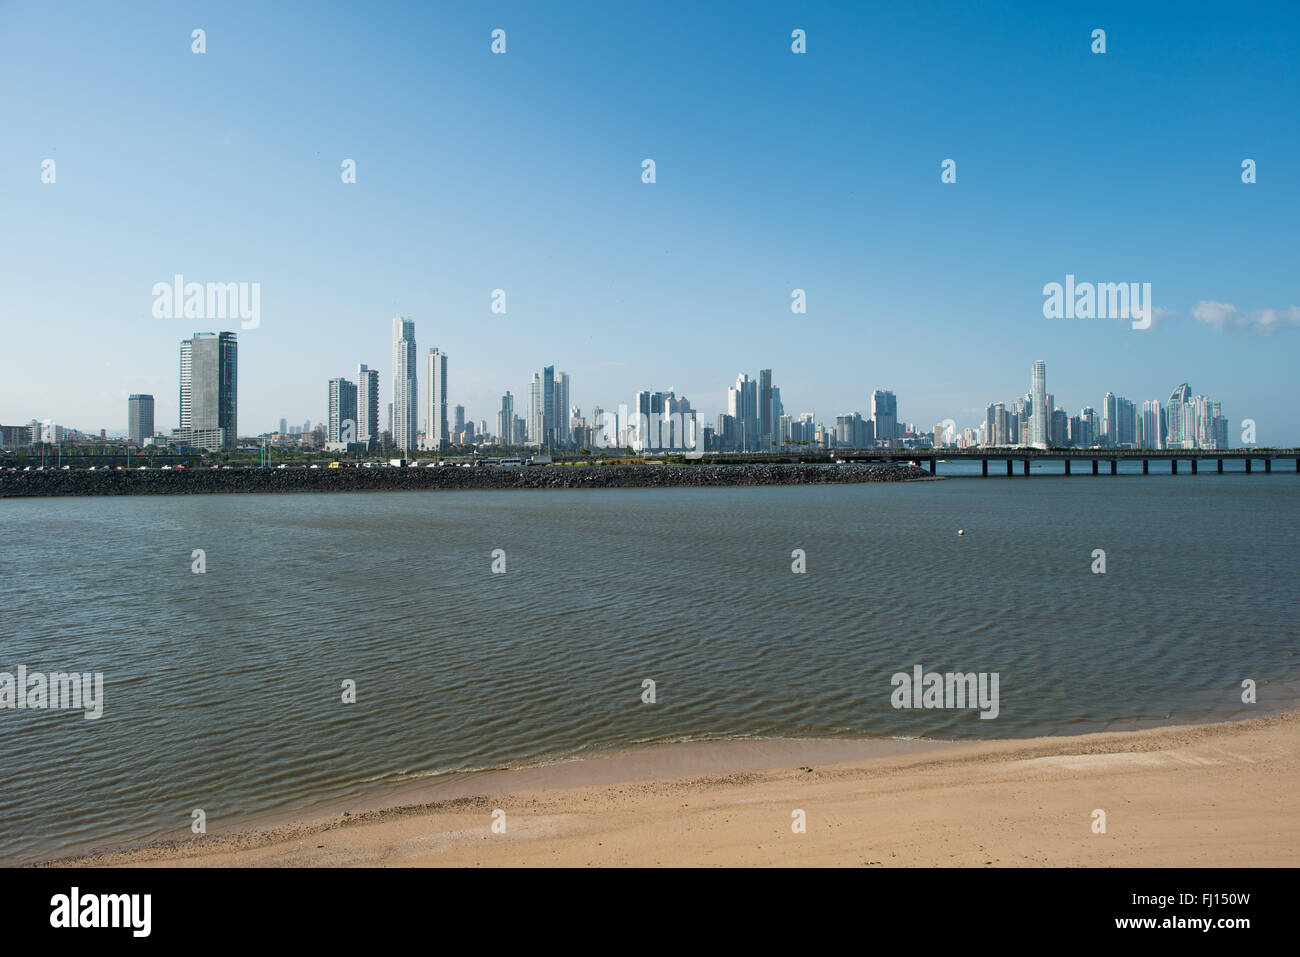 PANAMA CITY, Panama – die modernen Wolkenkratzer auf die Skyline von der Punta Paitilla Bezirk von Panama City, Panama. Stockfoto